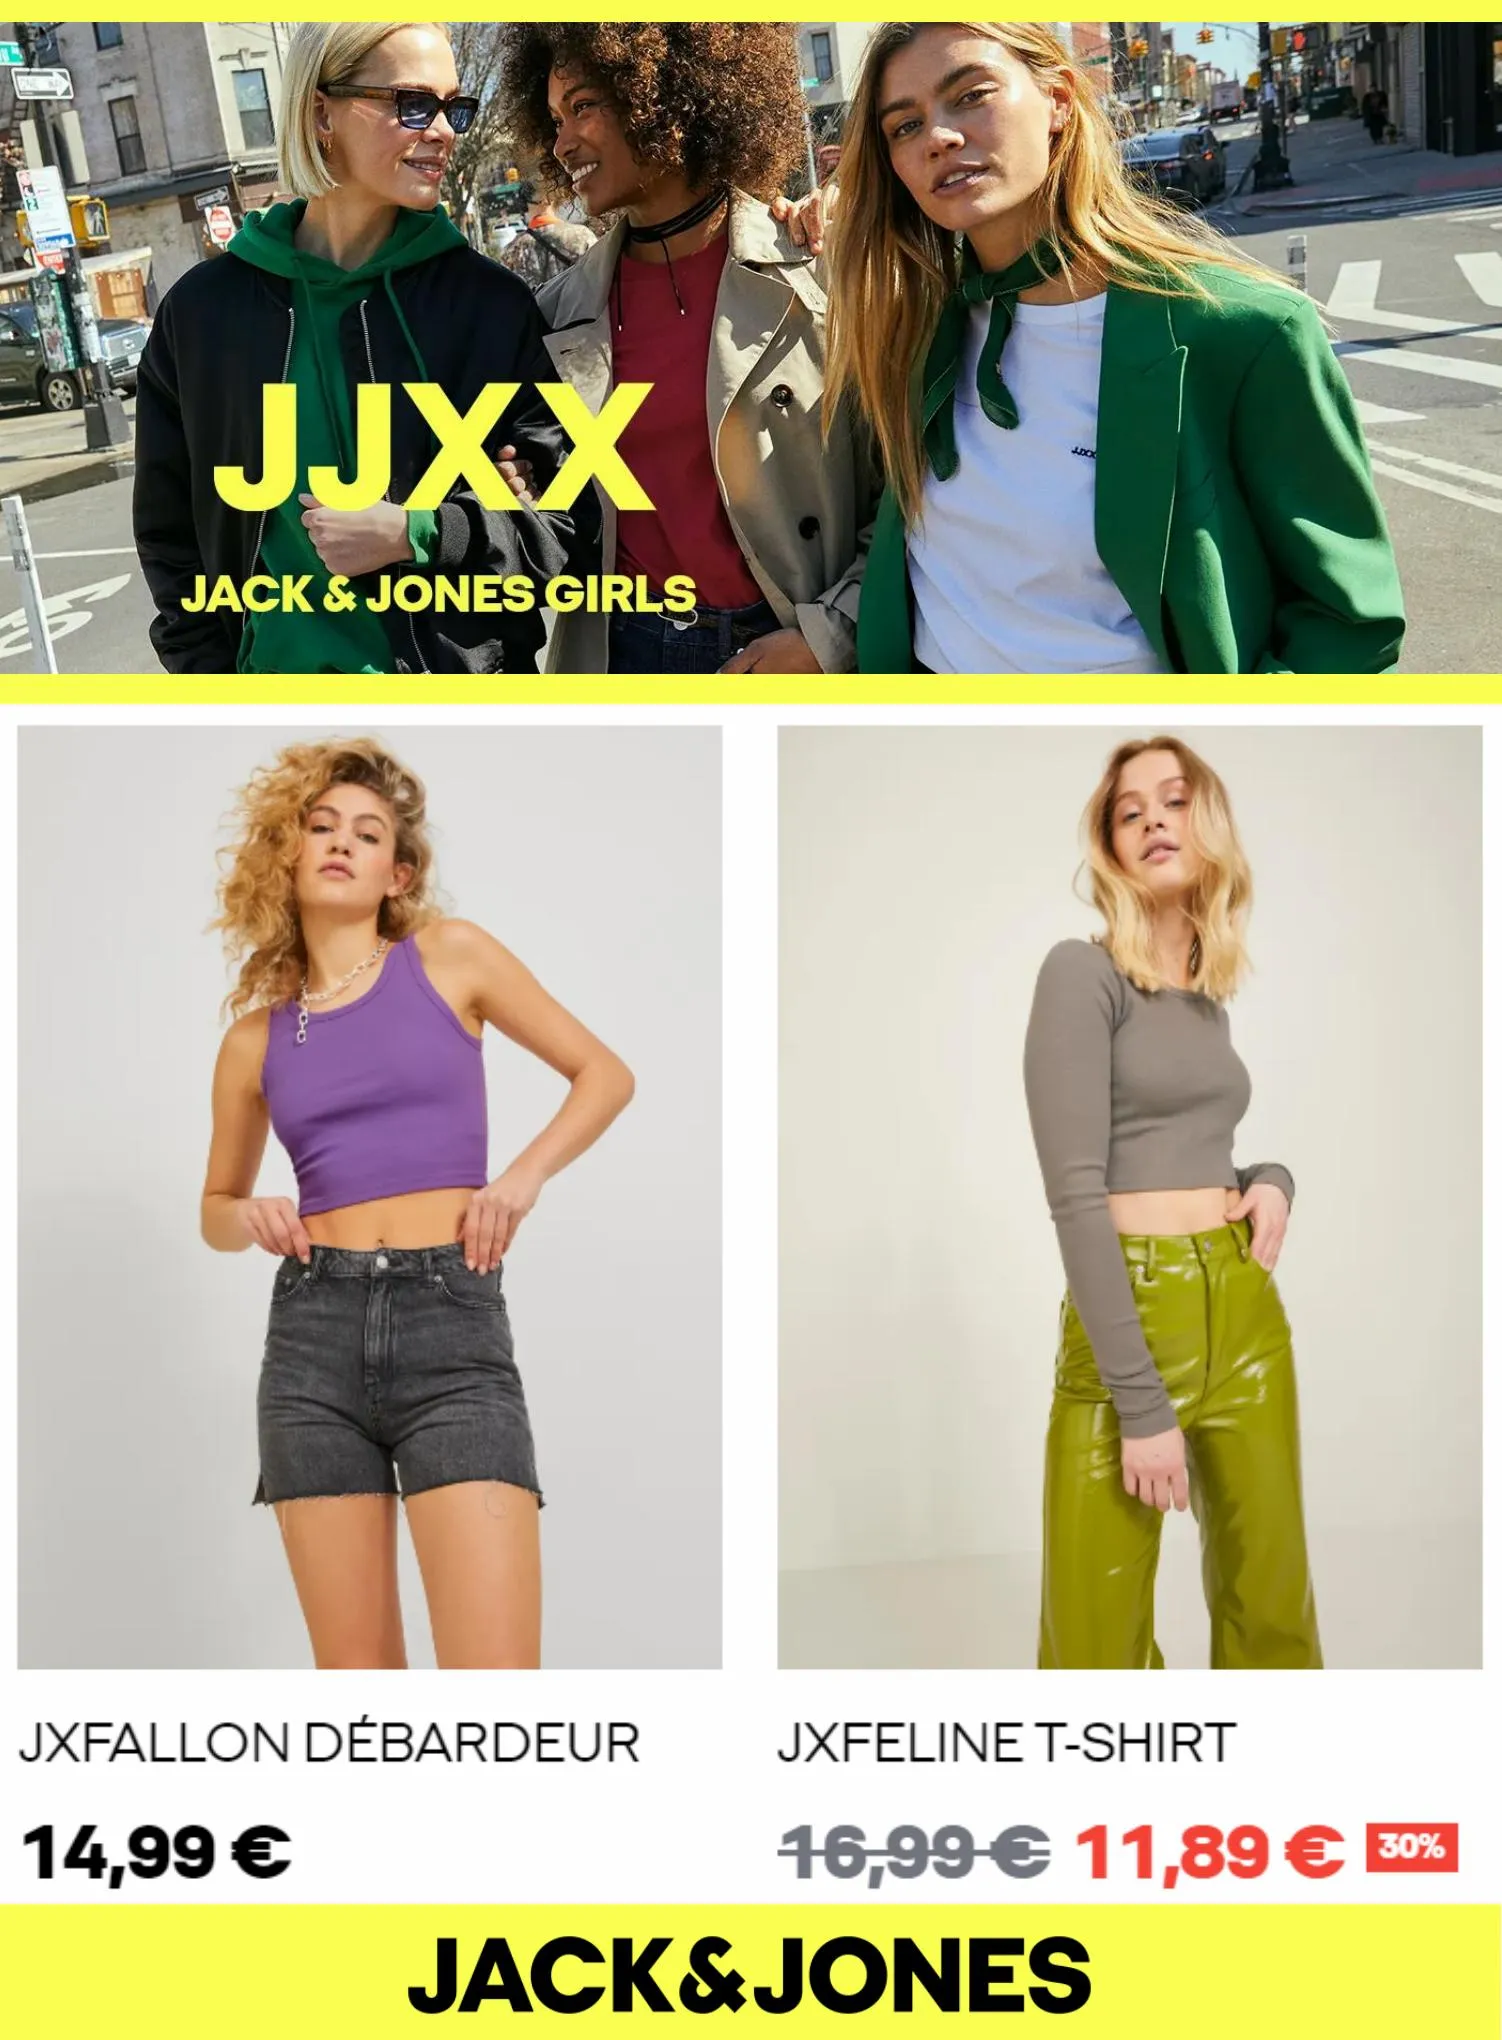 Catalogue JJXX Jack & Jones Girls, page 00007